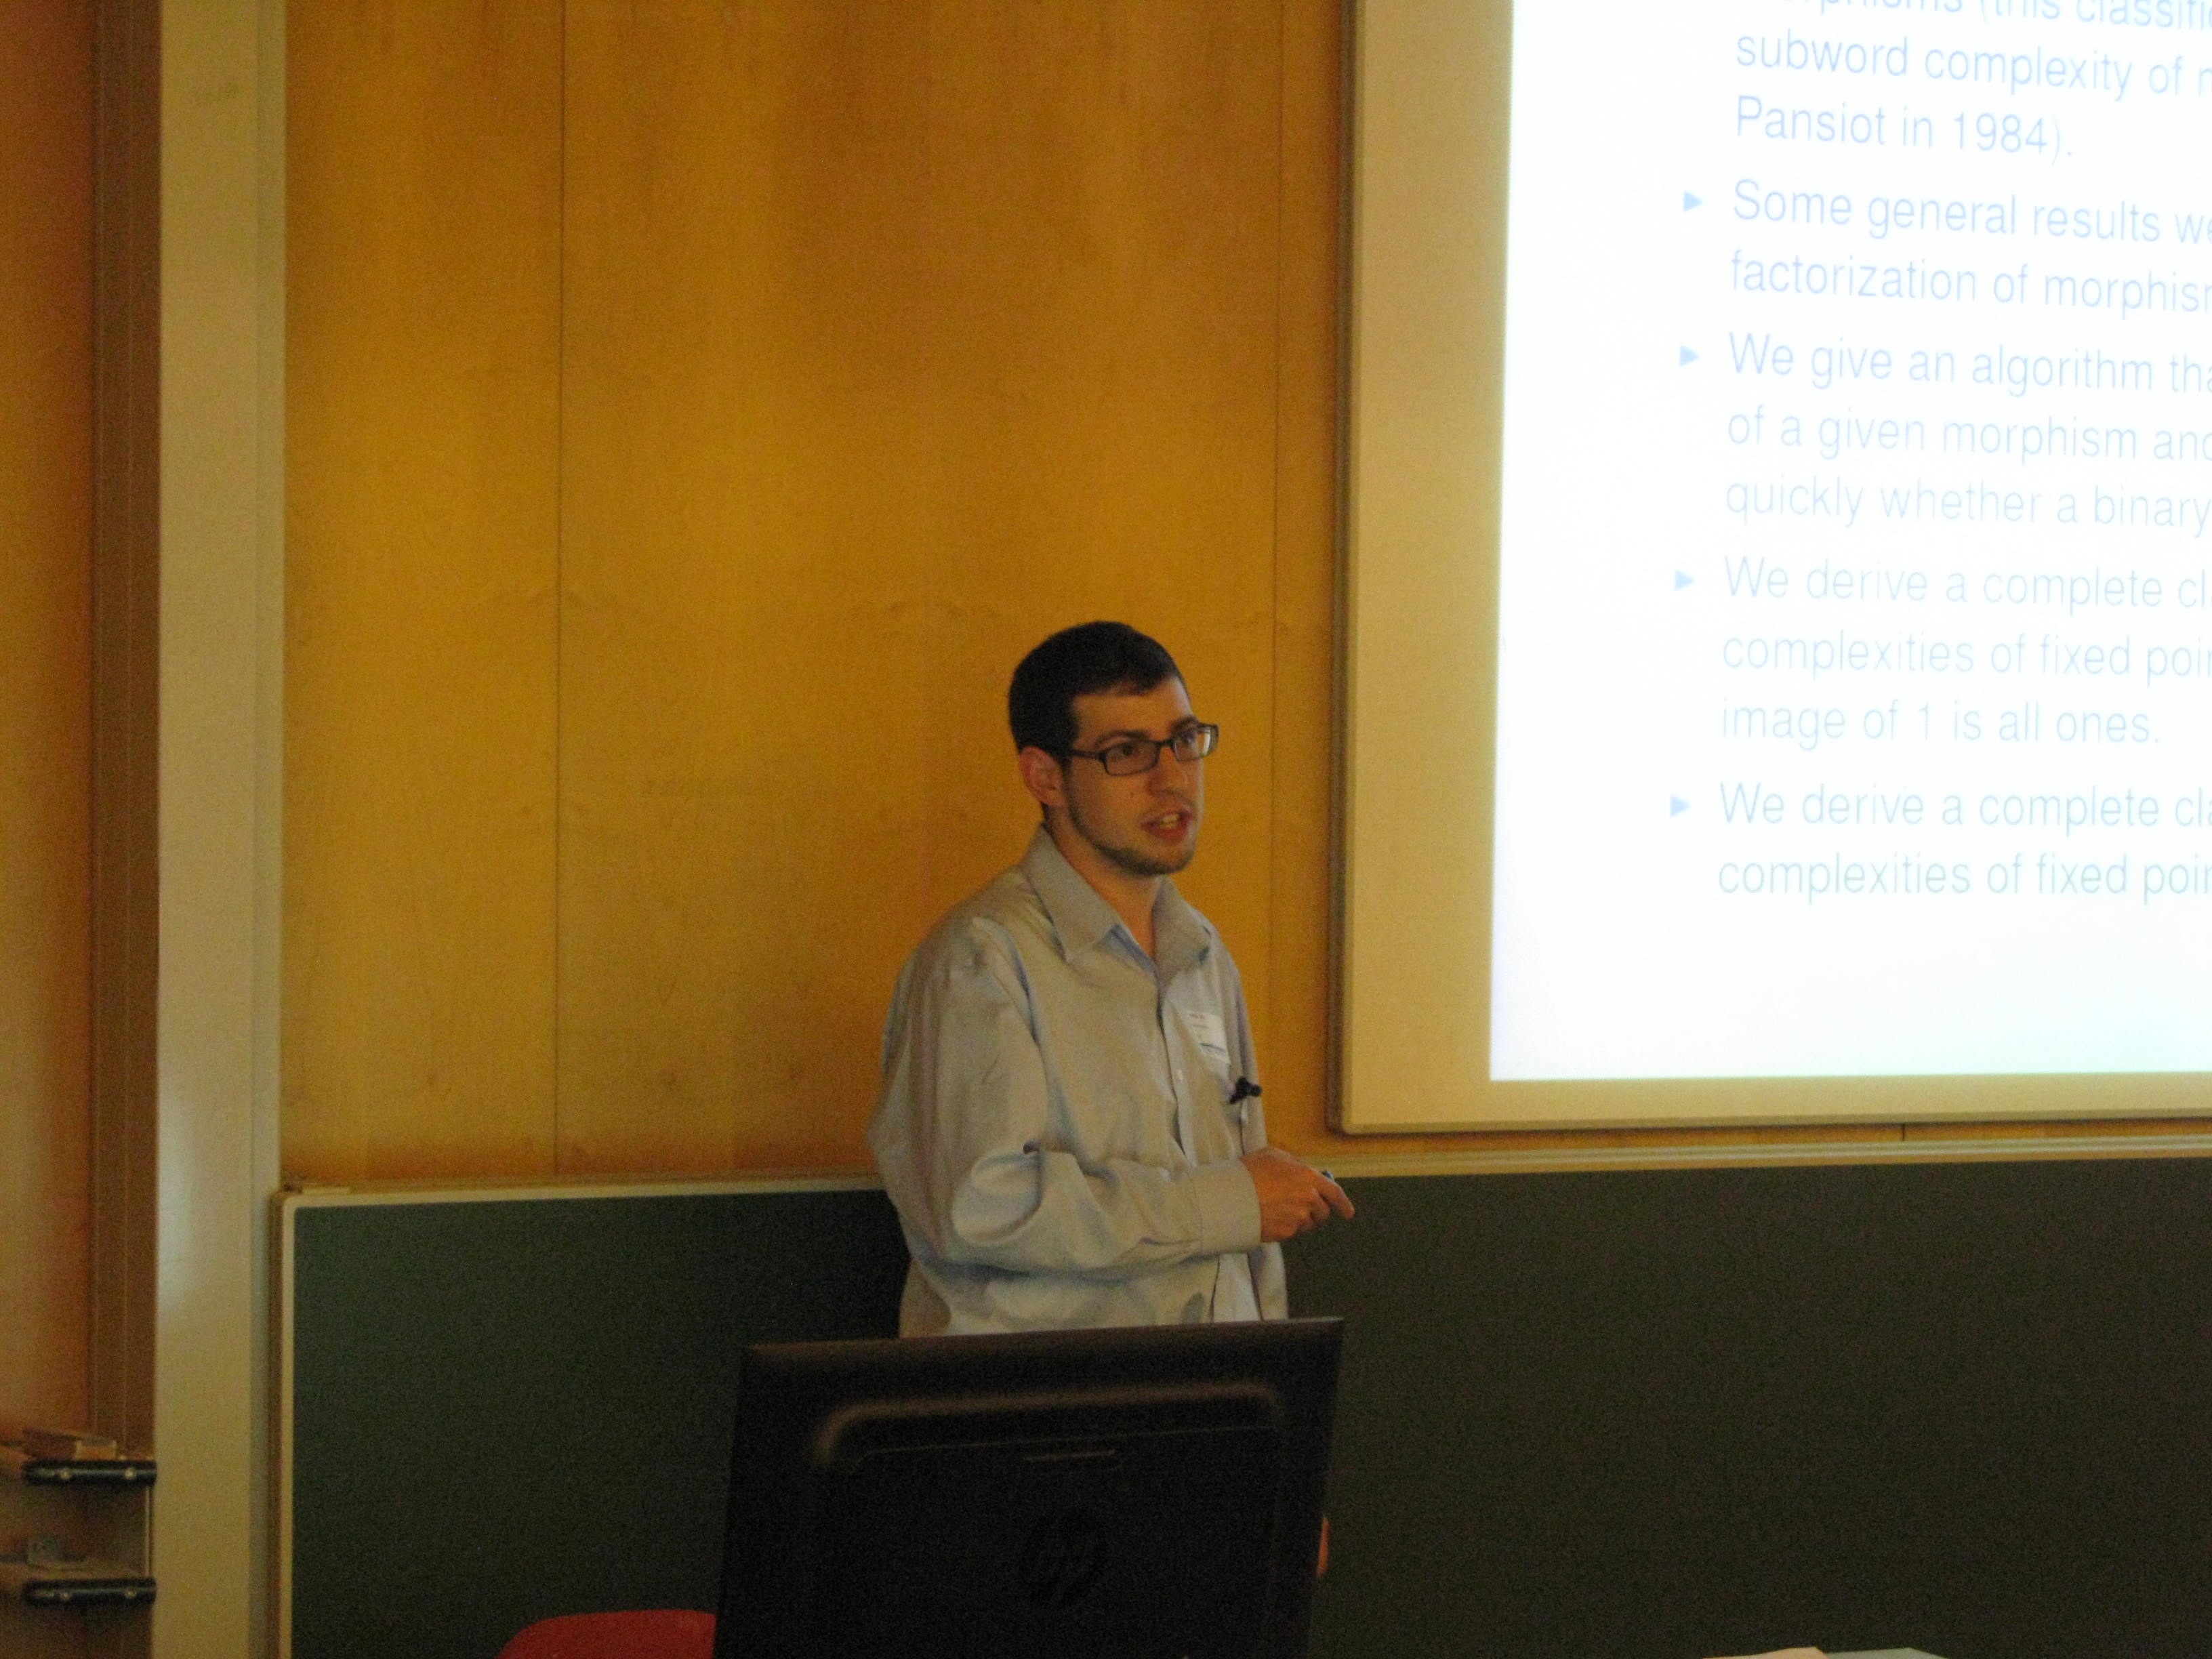 Nathan Fox presenting at DLT 2013.